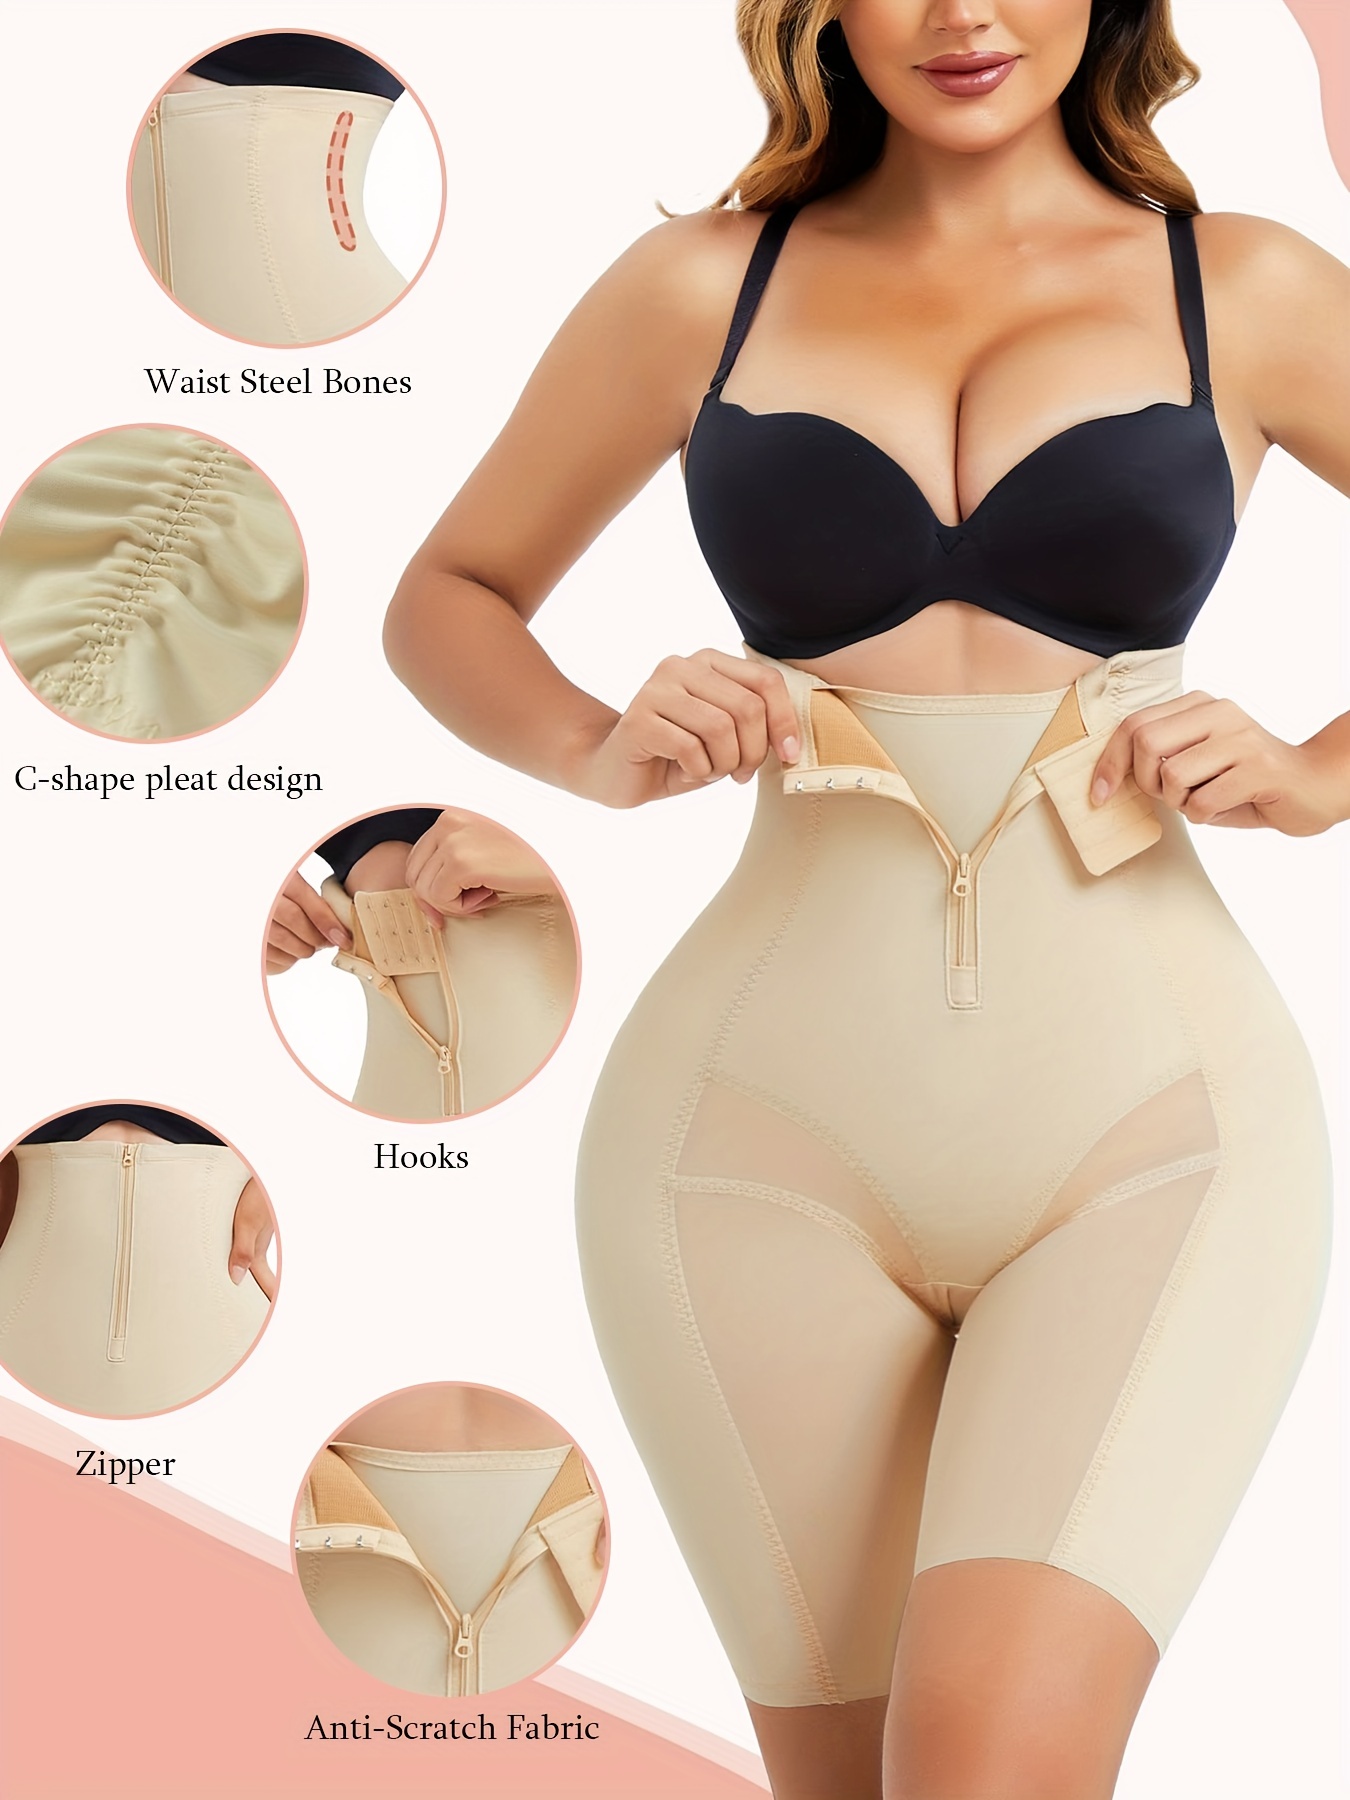 High Waist Shape Wear Panties Women Body Shaper Slimming Tummy Control  Underwear Corset Sheath Trainer Panties Shaperwear